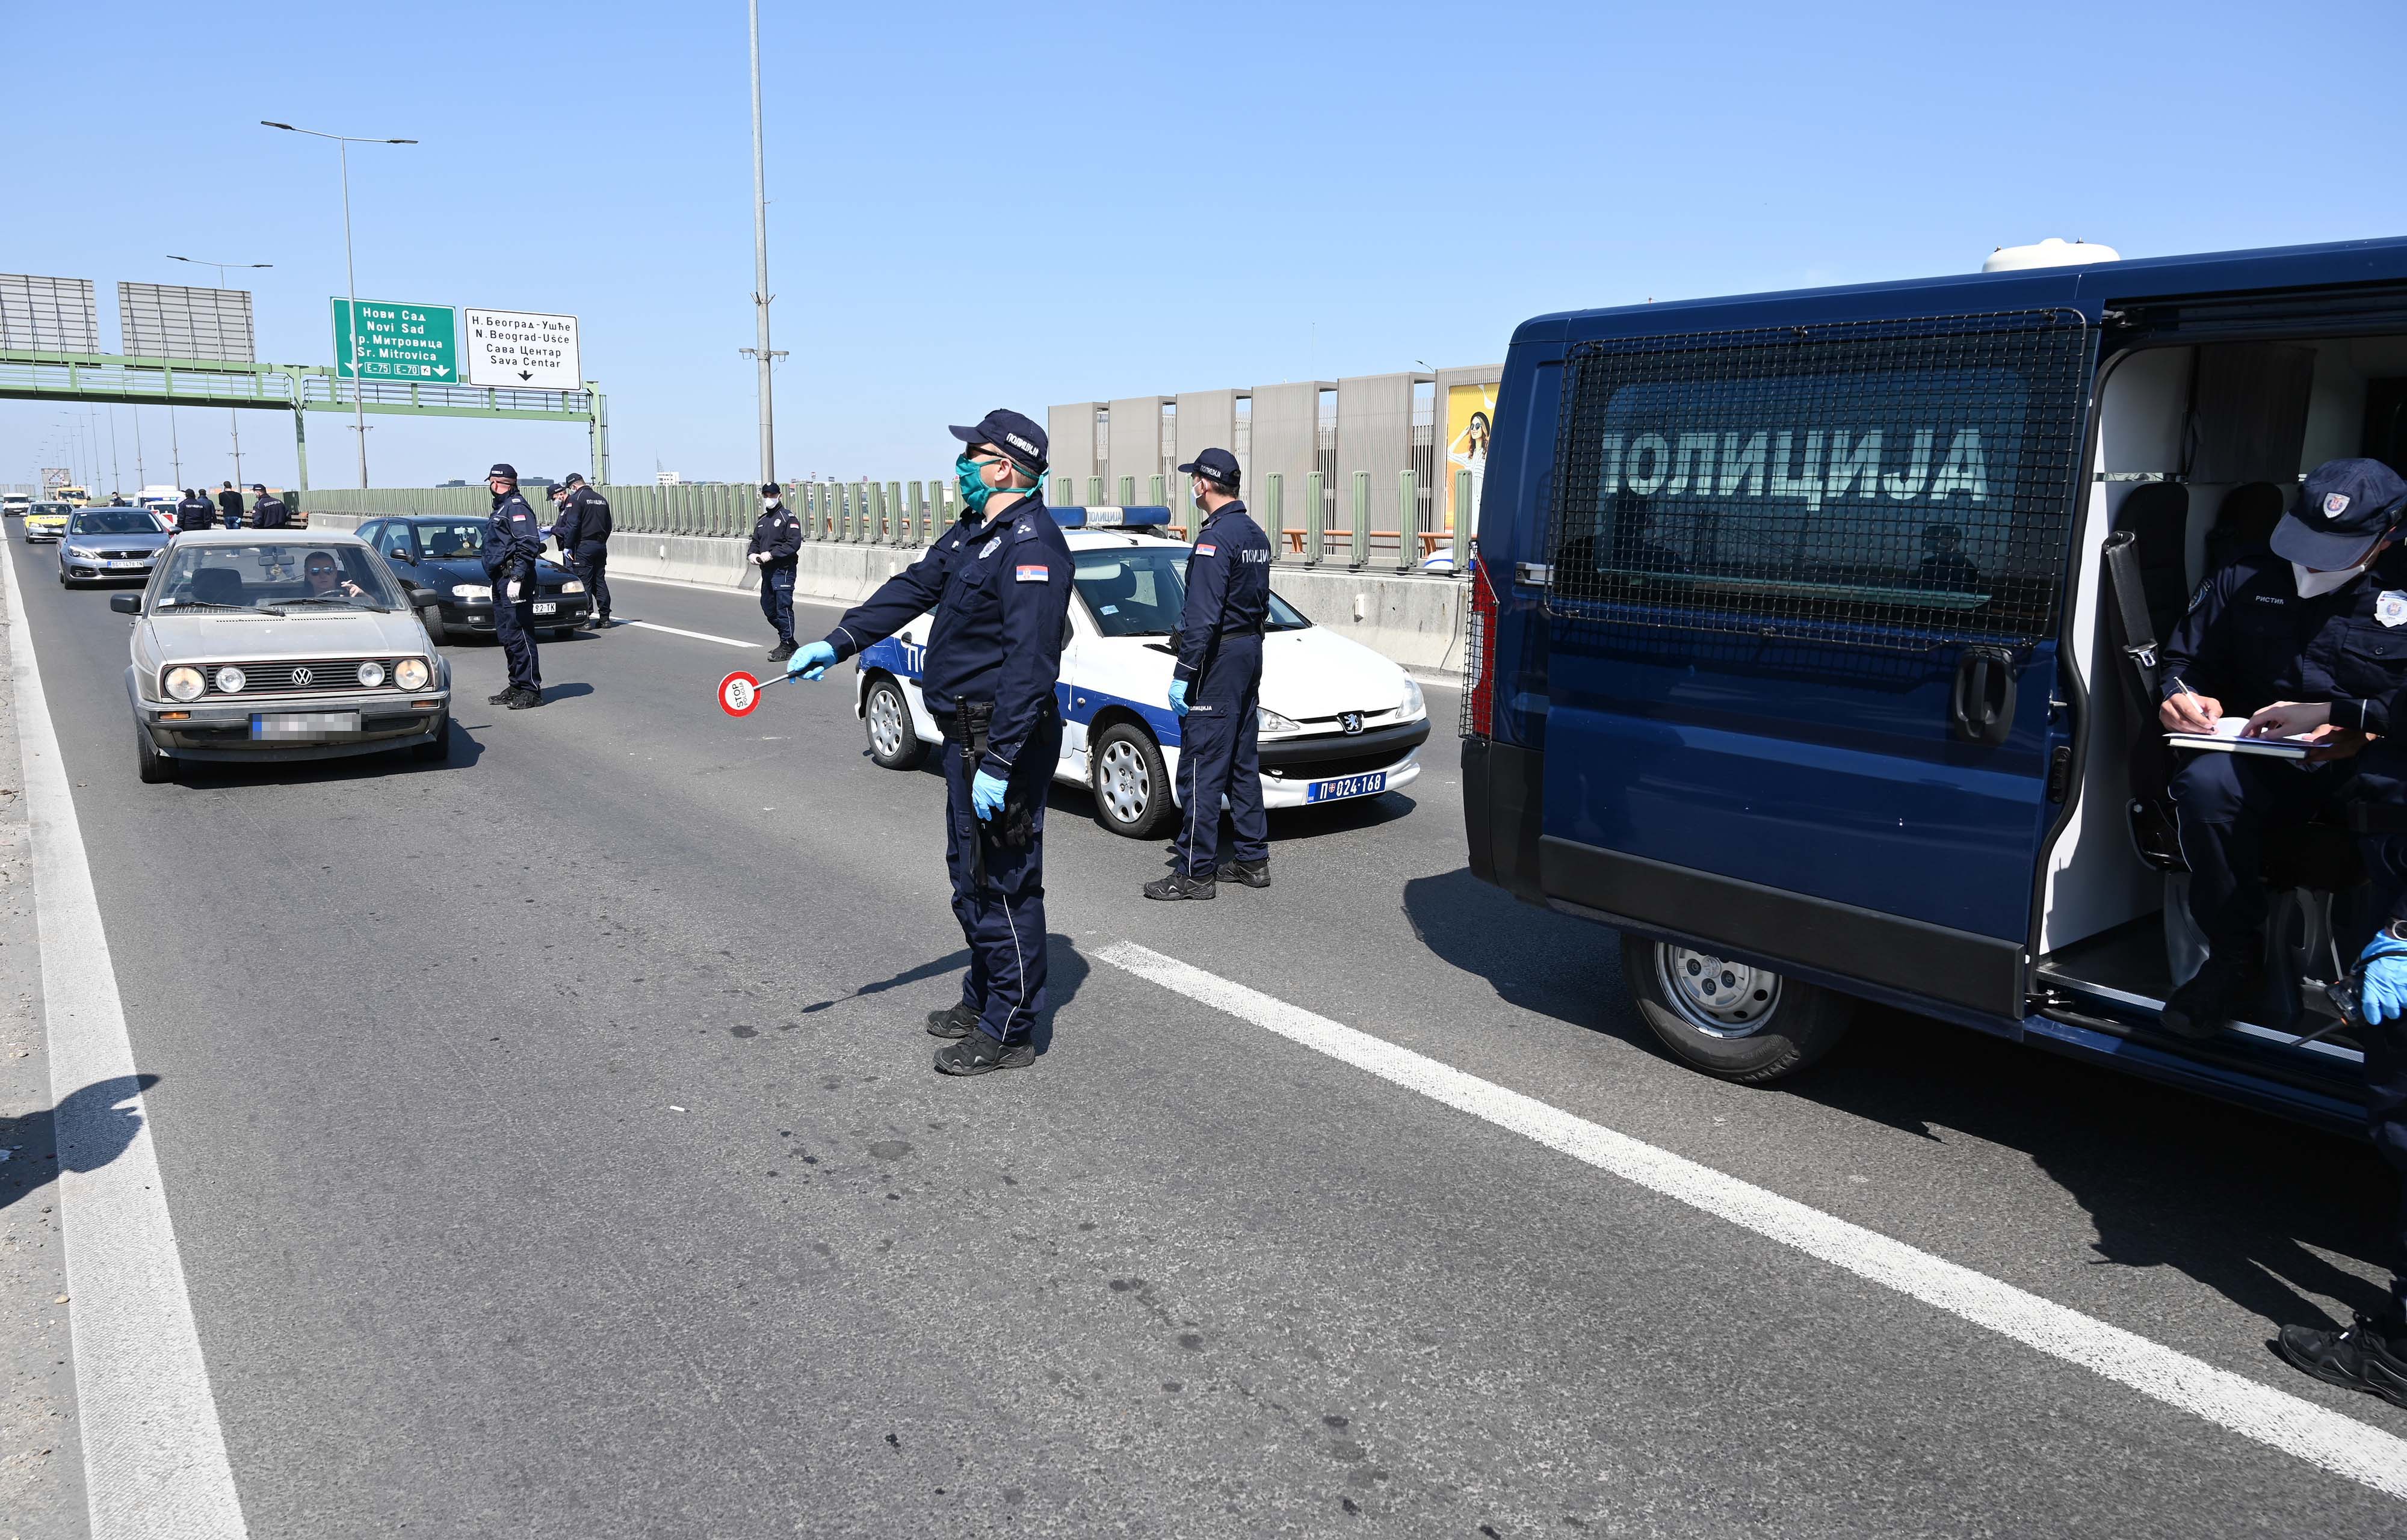 Ministar Stefanović se zahvalio pripadnicima policije na ogromnom požrtvovanju i zalaganju